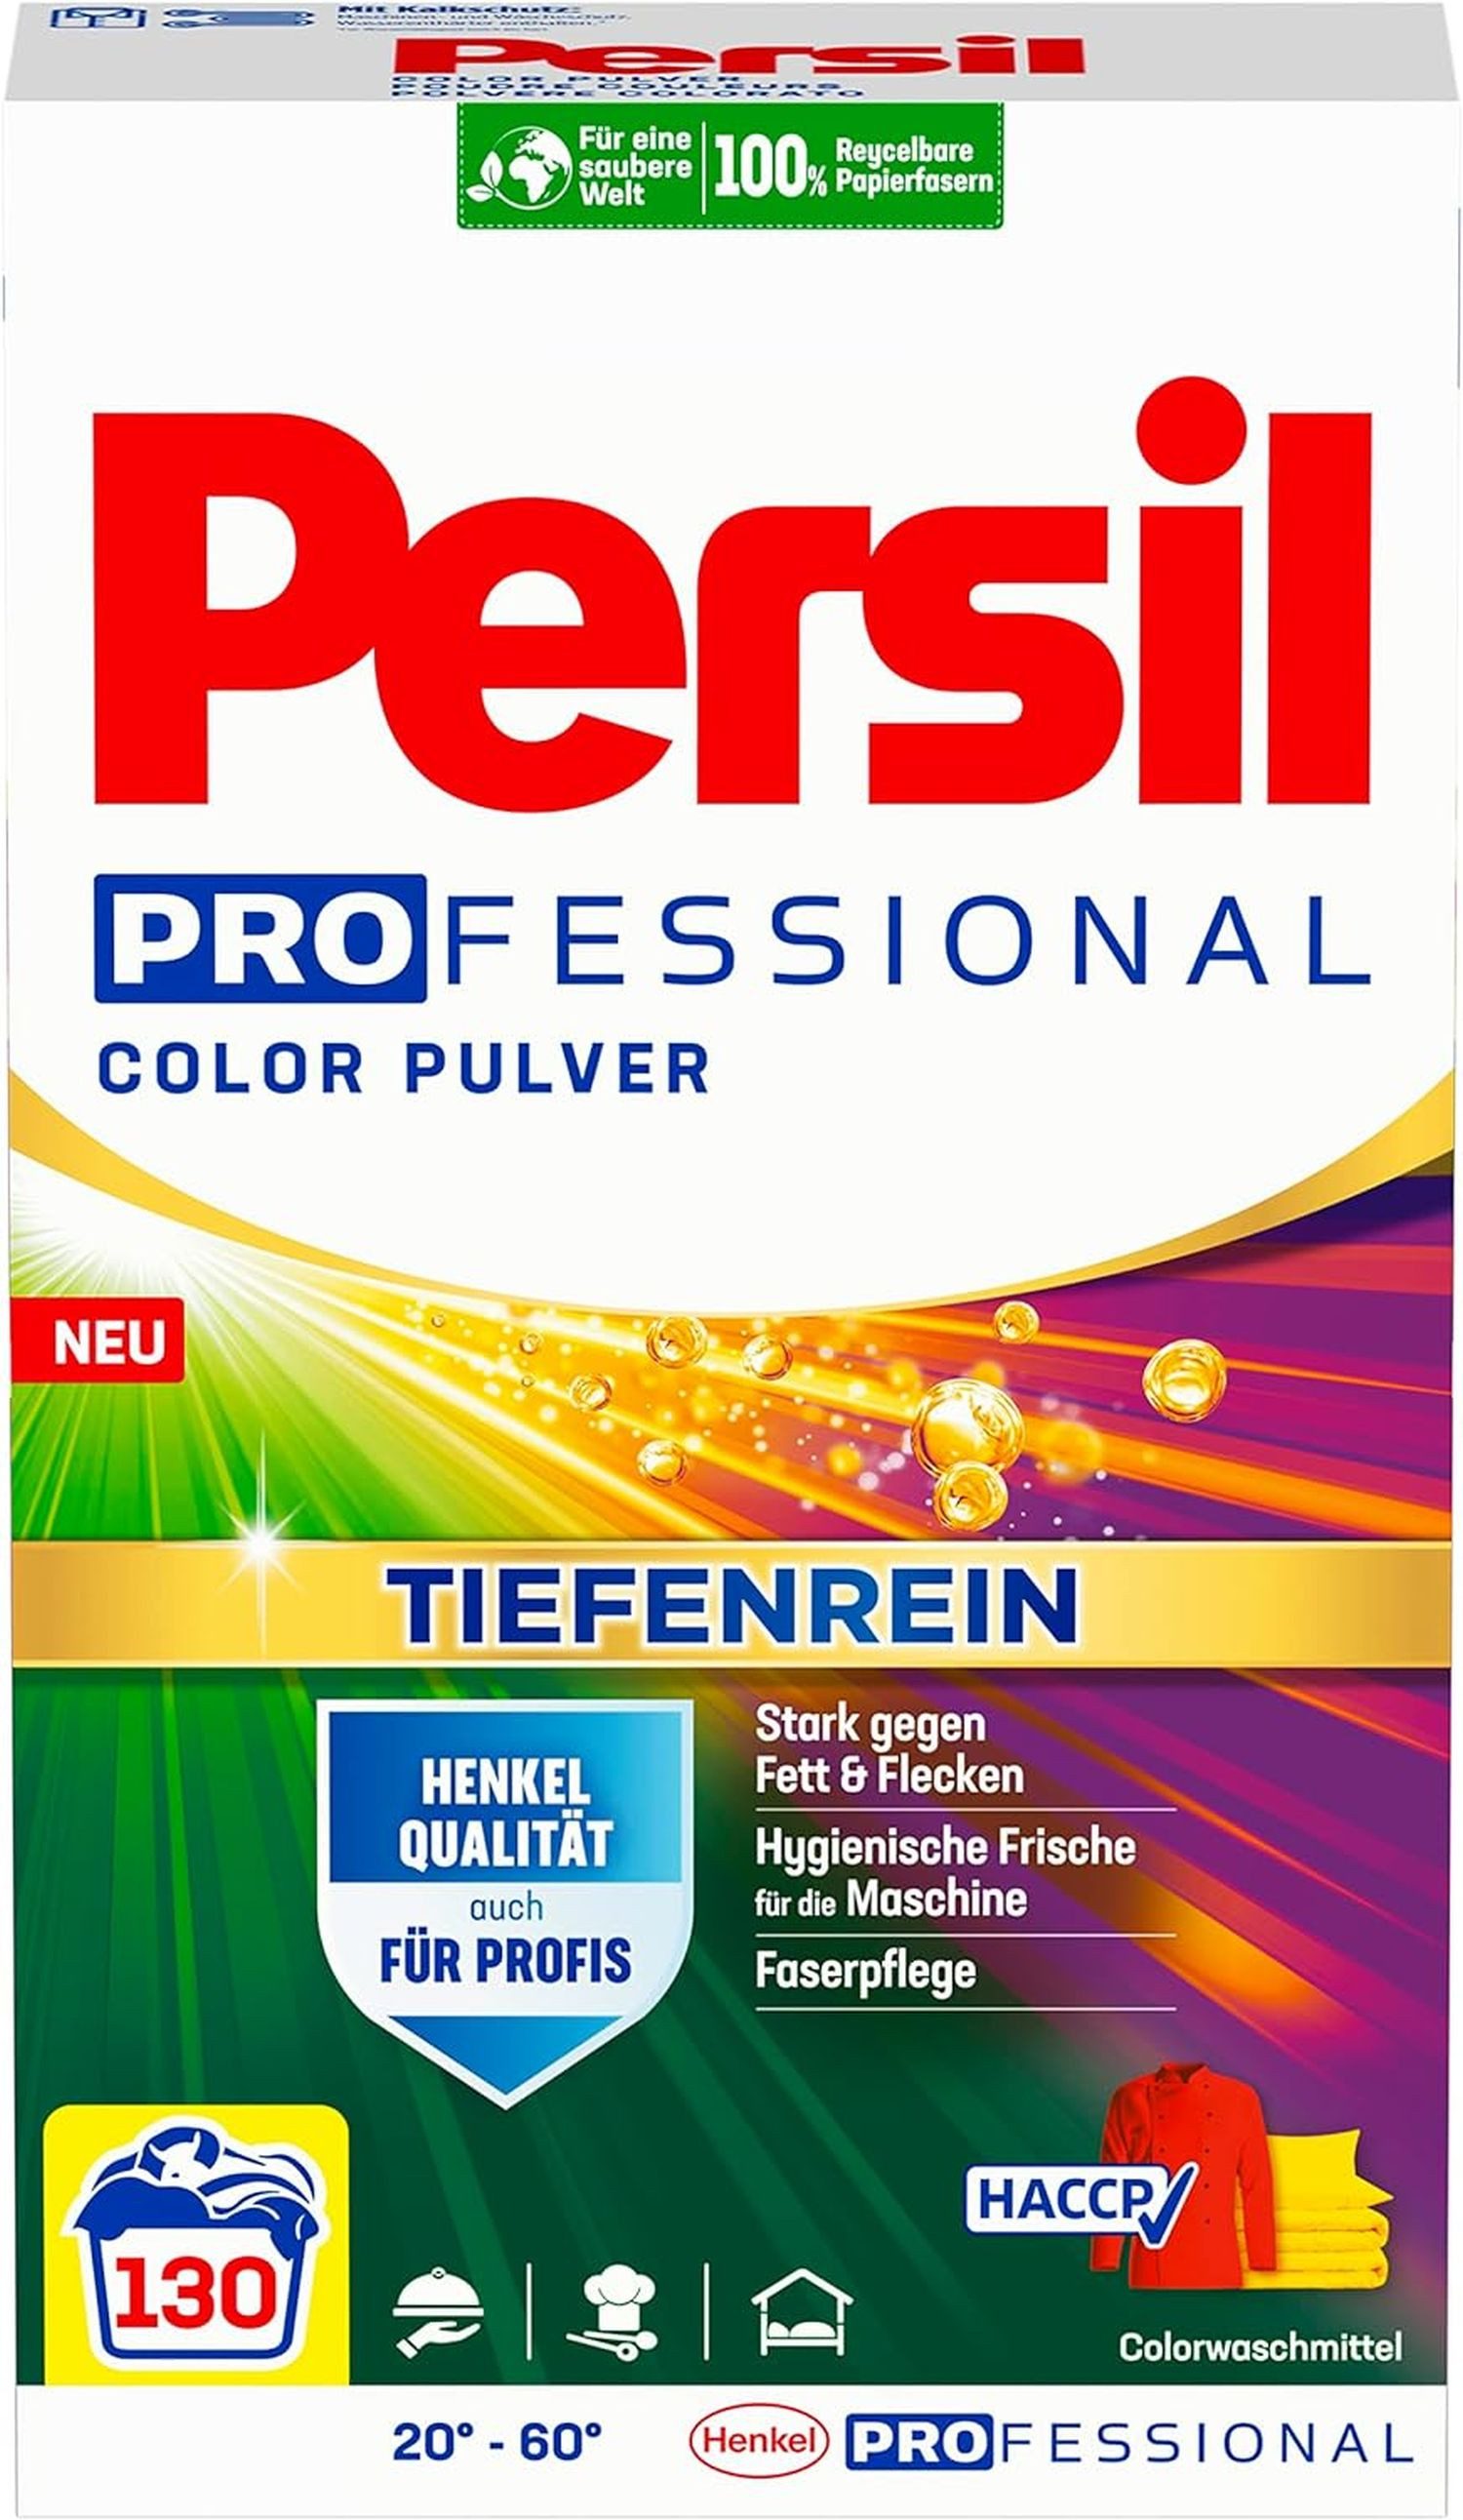 Persil Professional Vollwaschmittel Pulver Color 7,80 kg - 130 WL Vollwaschmittel (effektiv von 20 °C bis 60 °C)